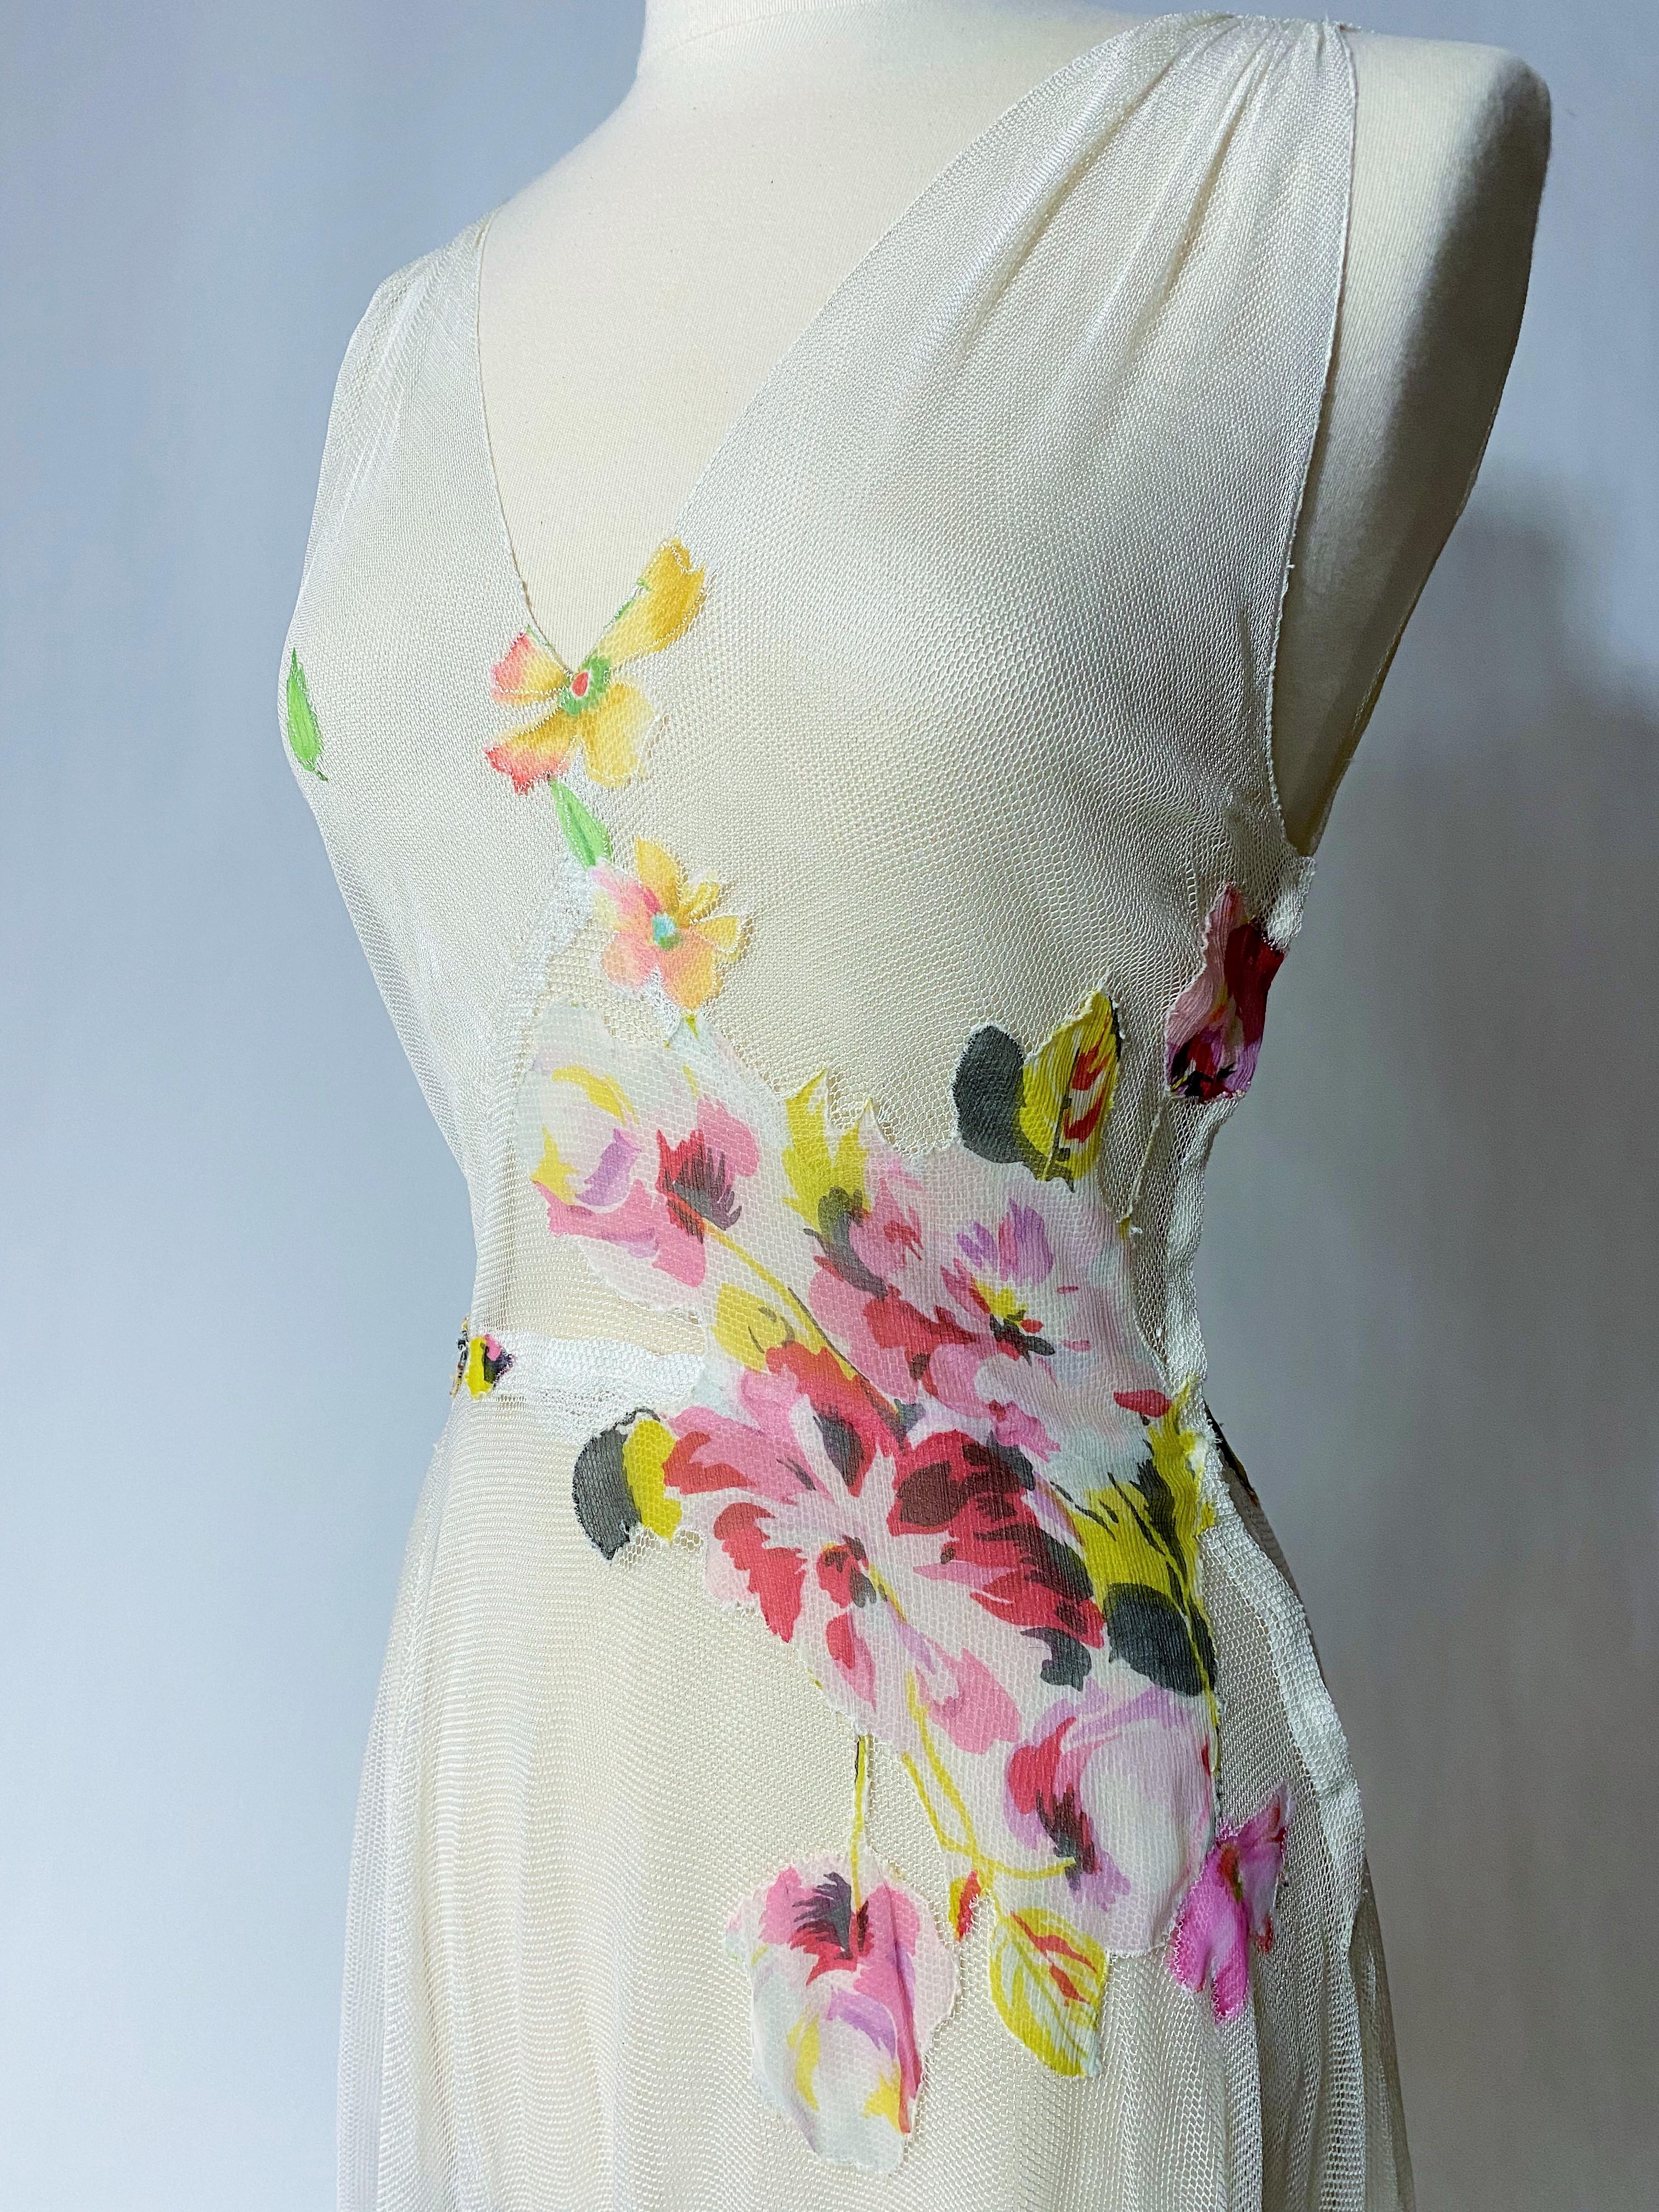 Ca. 1935-1940

Frankreich

Langes Sommerkleid aus weißem Baumwollnetztüll, überzogen mit floral bedrucktem Seidenchiffon, aus den späten 1930er Jahren, mit vermeintlicher Romantik. Ärmelloses Kleid mit tiefem V-Ausschnitt, seitlich mit Druckknöpfen